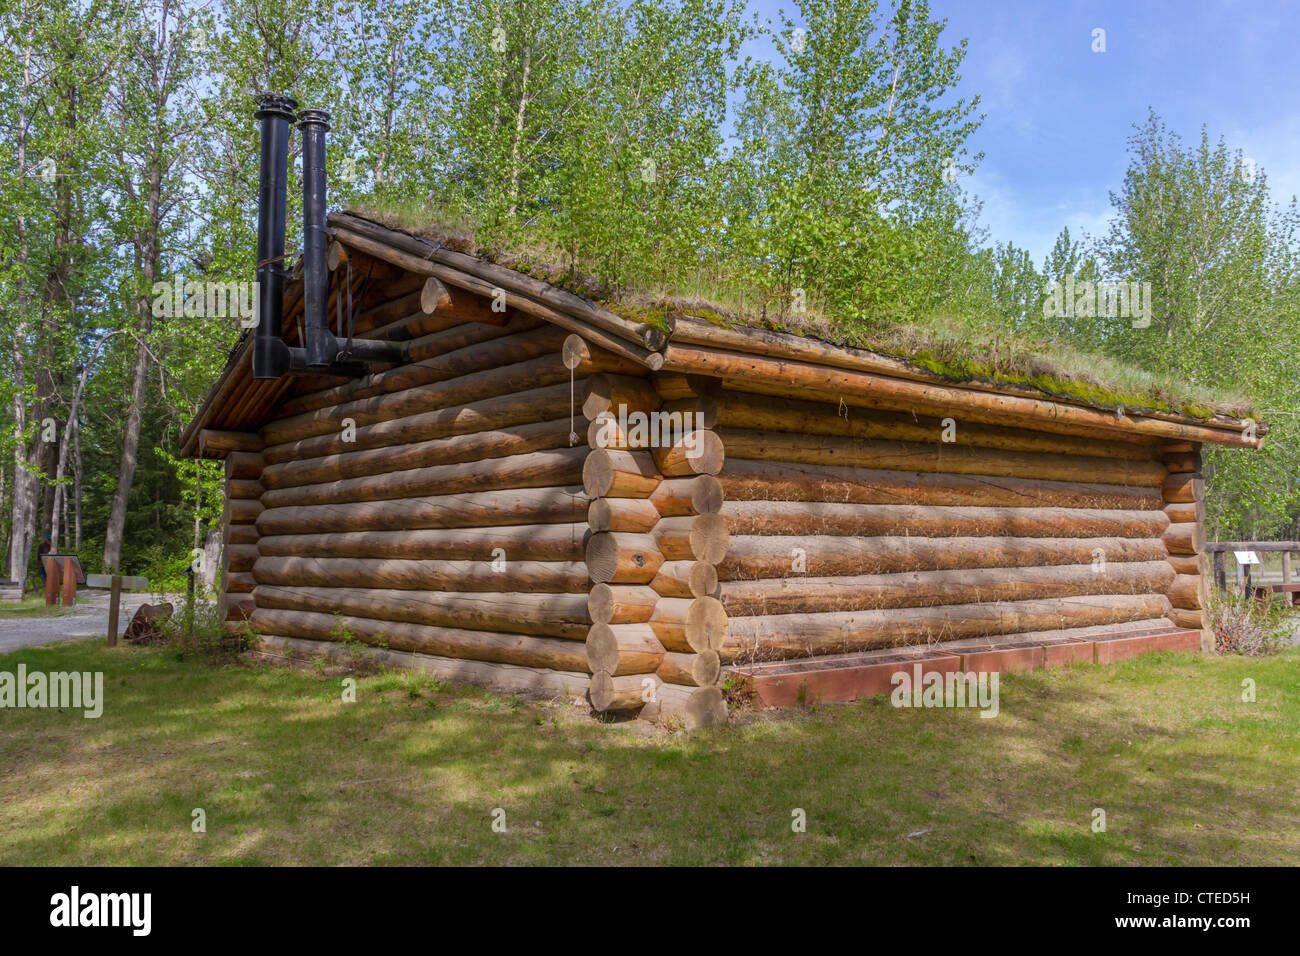 Rika's Roadhouse museo de historia viva en el parque estatal de Alaska Big Delta State Historical Park cerca de Fairbanks, Alaska. Foto de stock